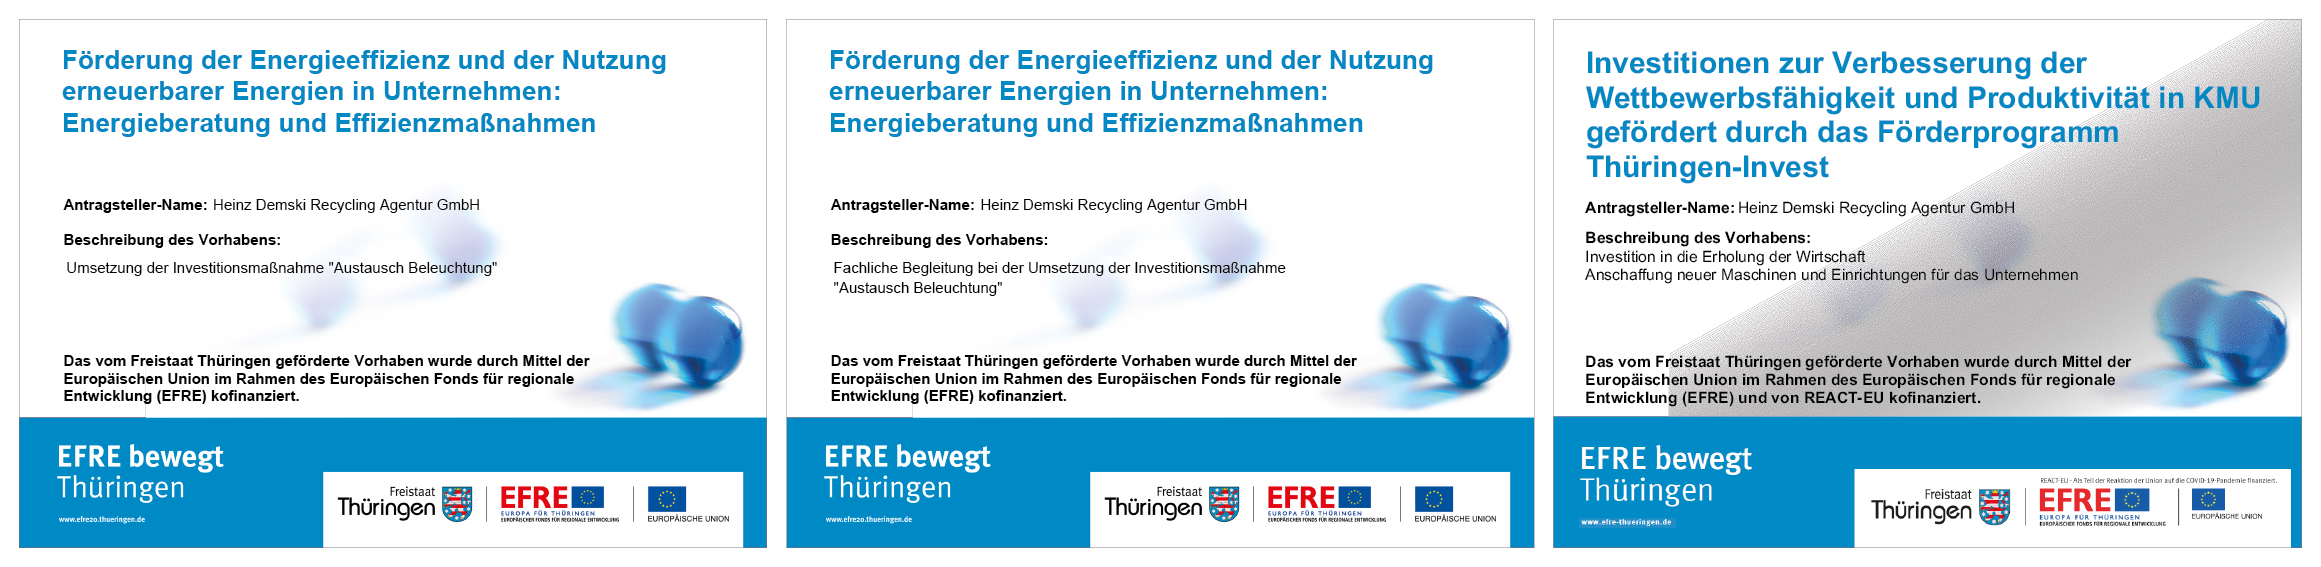 Information zu EFRE - Europäischer Fonds für regionale Entwicklung in Thüringen